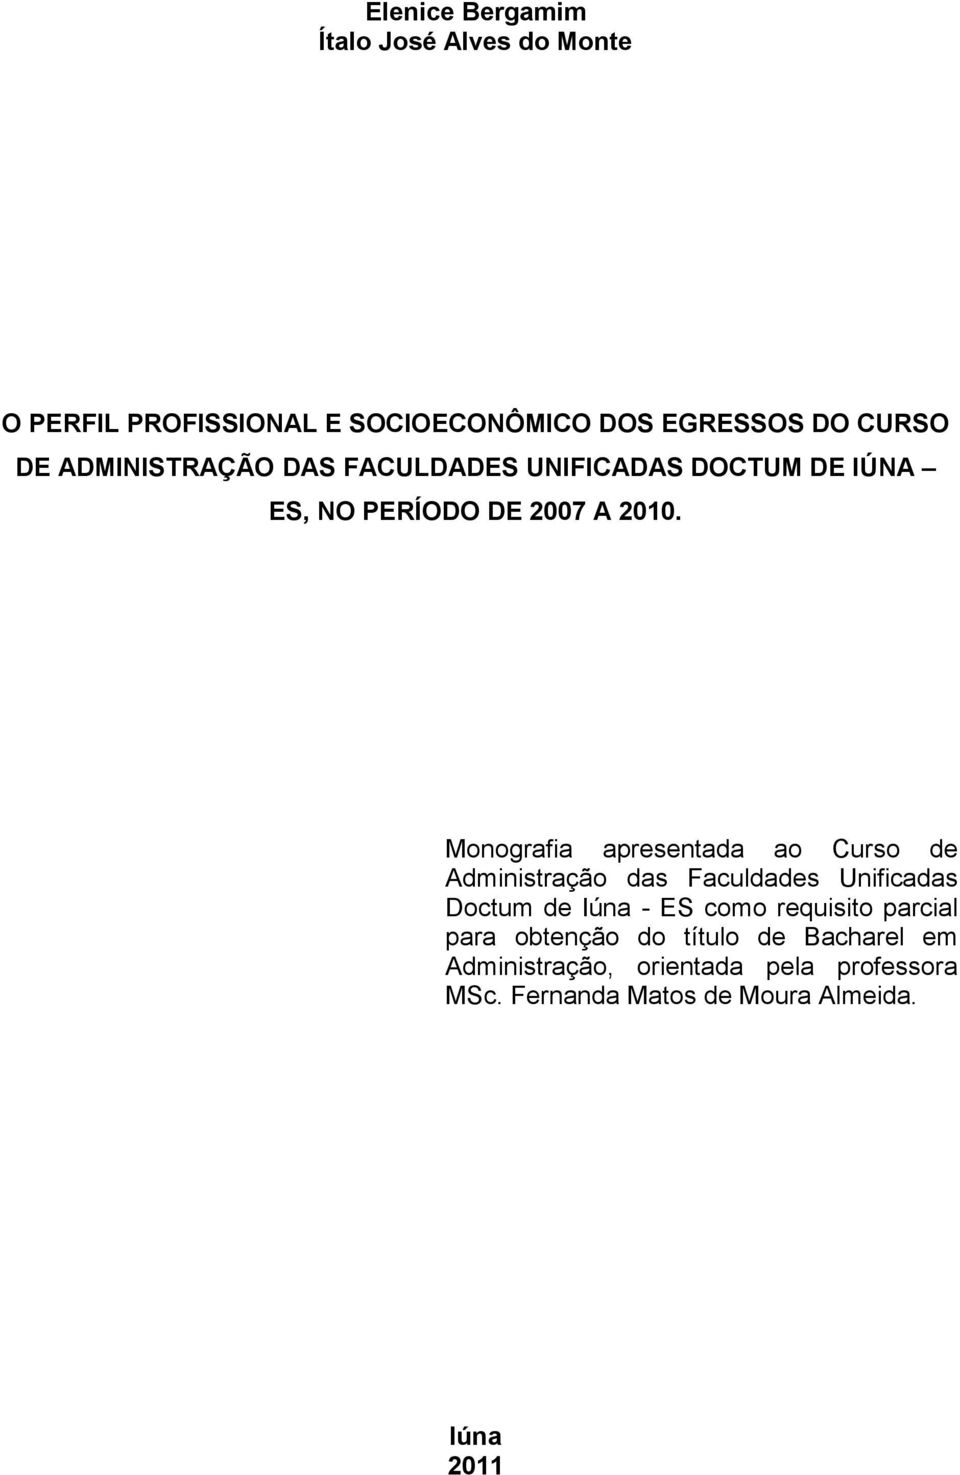 Monografia apresentada ao Curso de Administração das Faculdades Unificadas Doctum de Iúna - ES como requisito